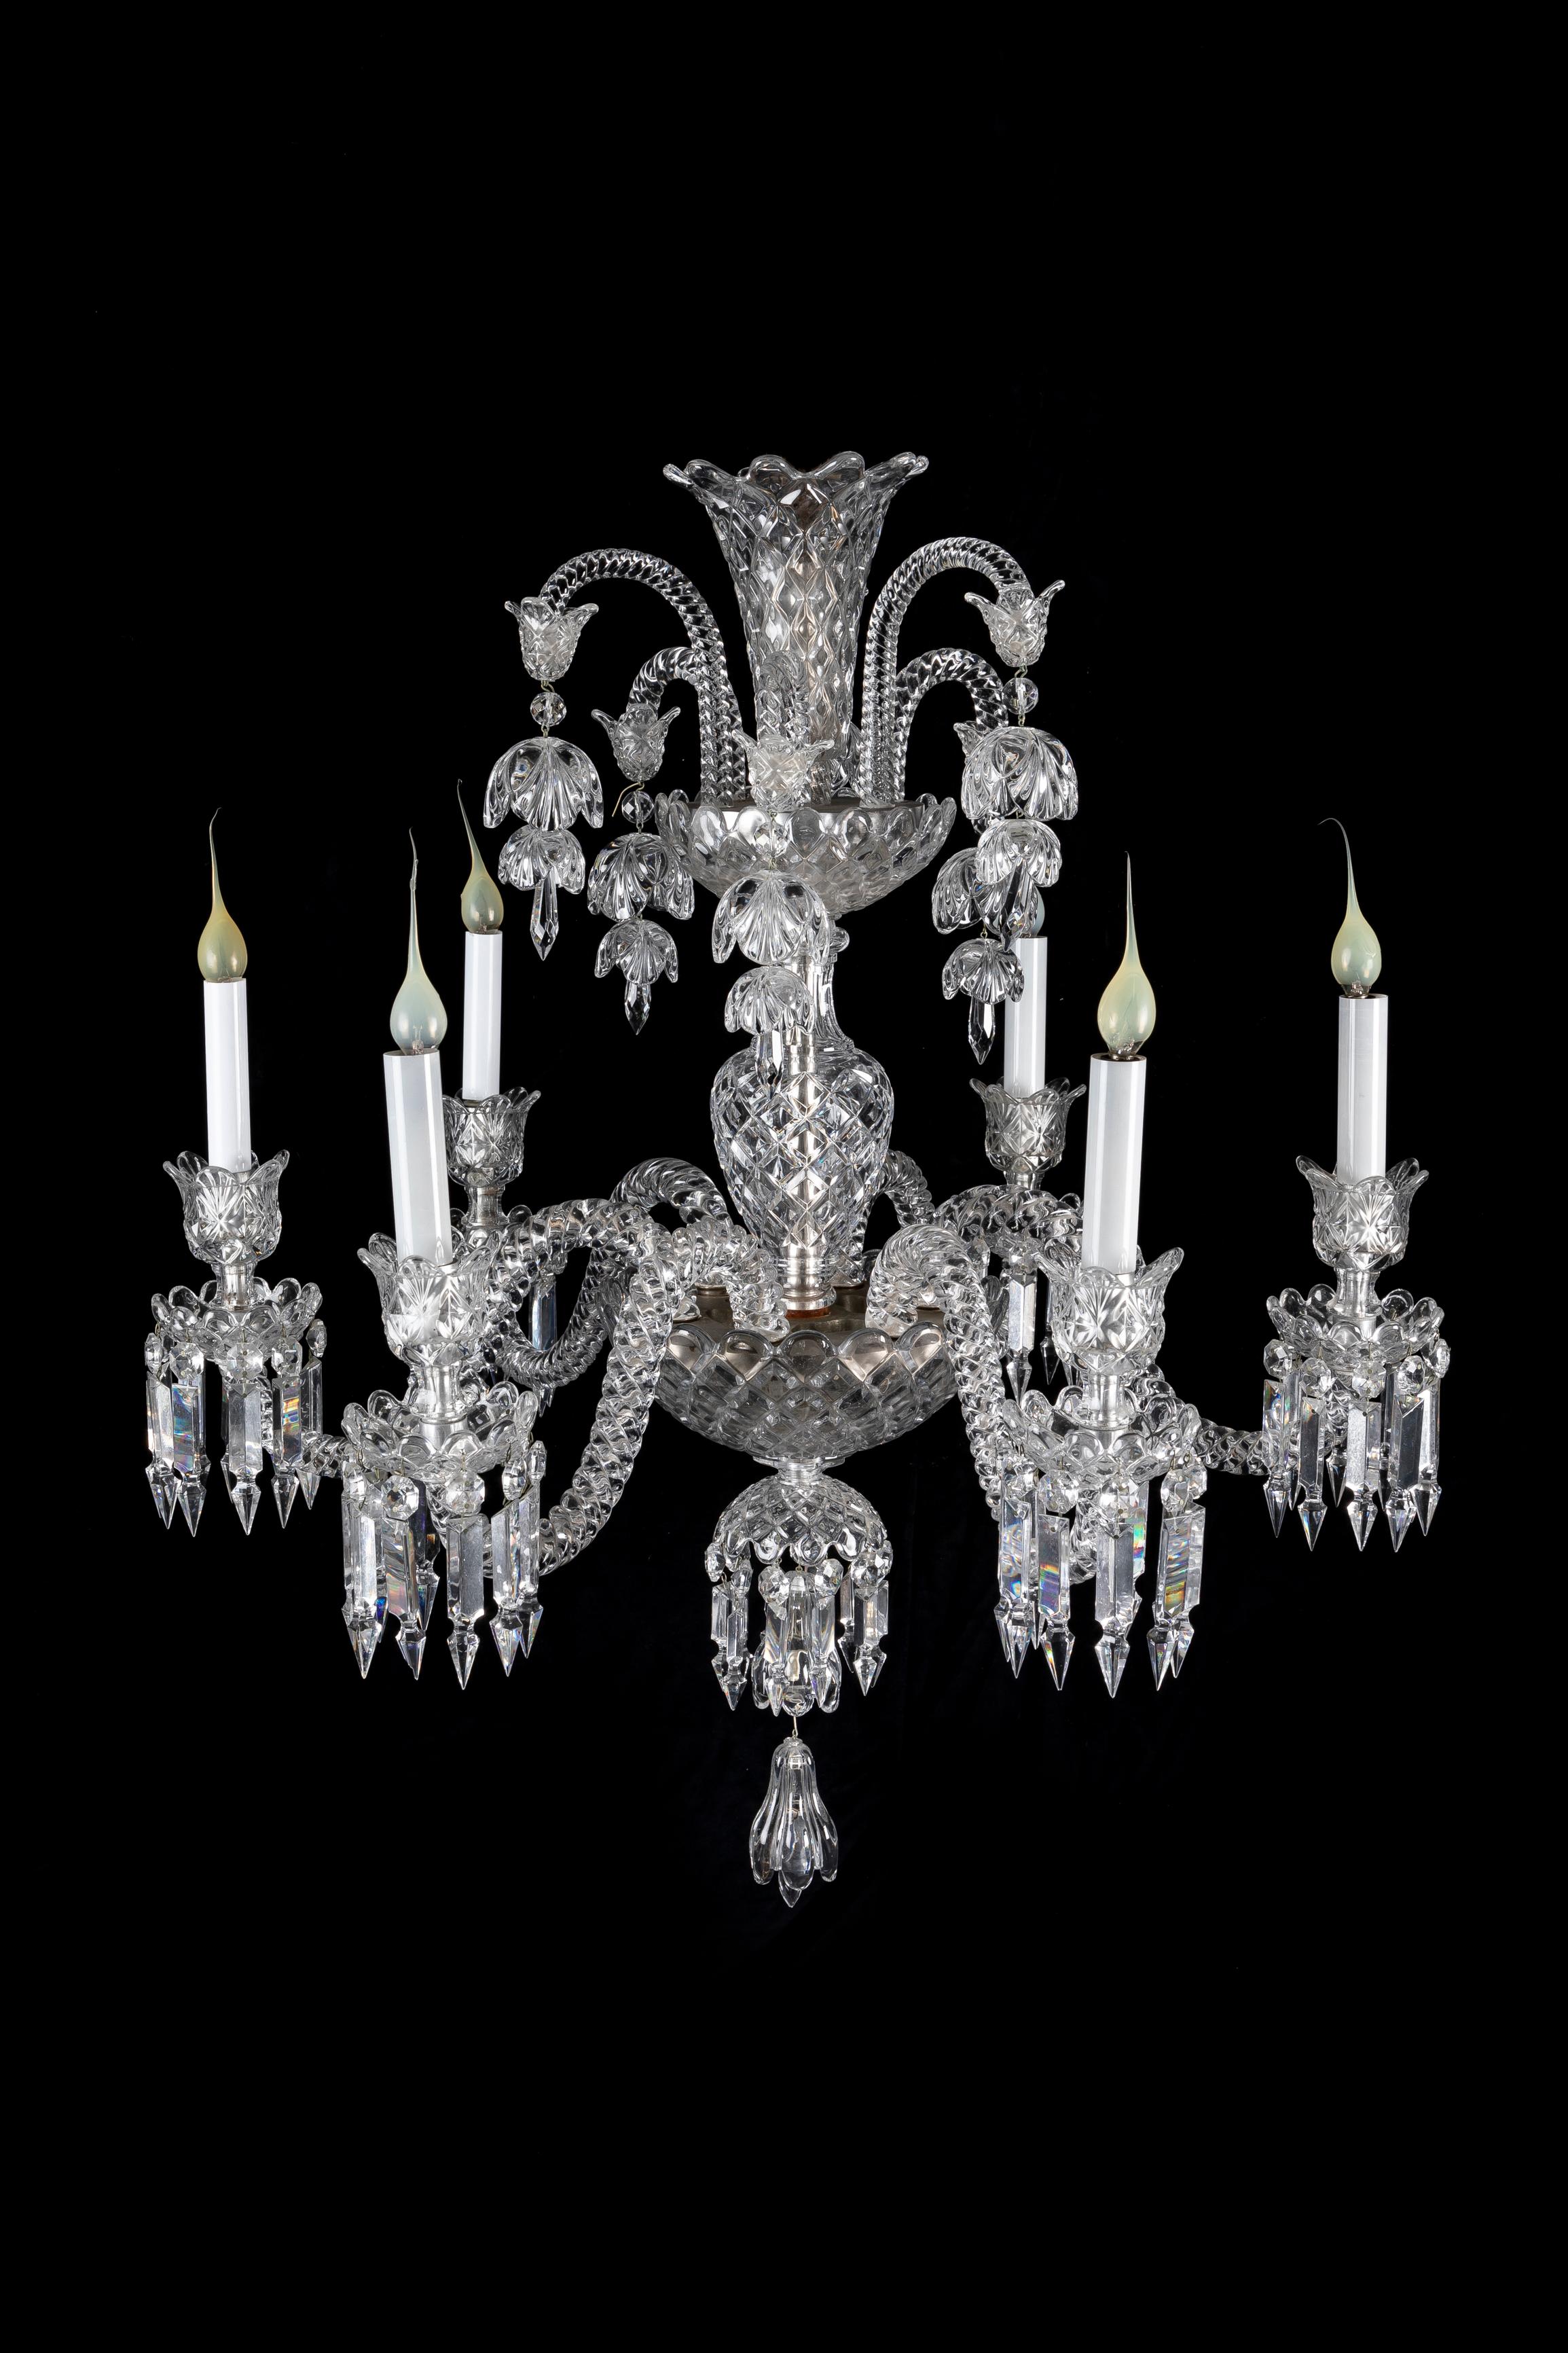 Lustre à six lumières en cristal de Baccarat, de style Louis XVI, d'une exquise qualité d'exécution. Ce lustre inhabituel en cristal de Baccarat est composé de six bras torsadés en cristal, ornés de prismes en cristal finement taillés. La couronne